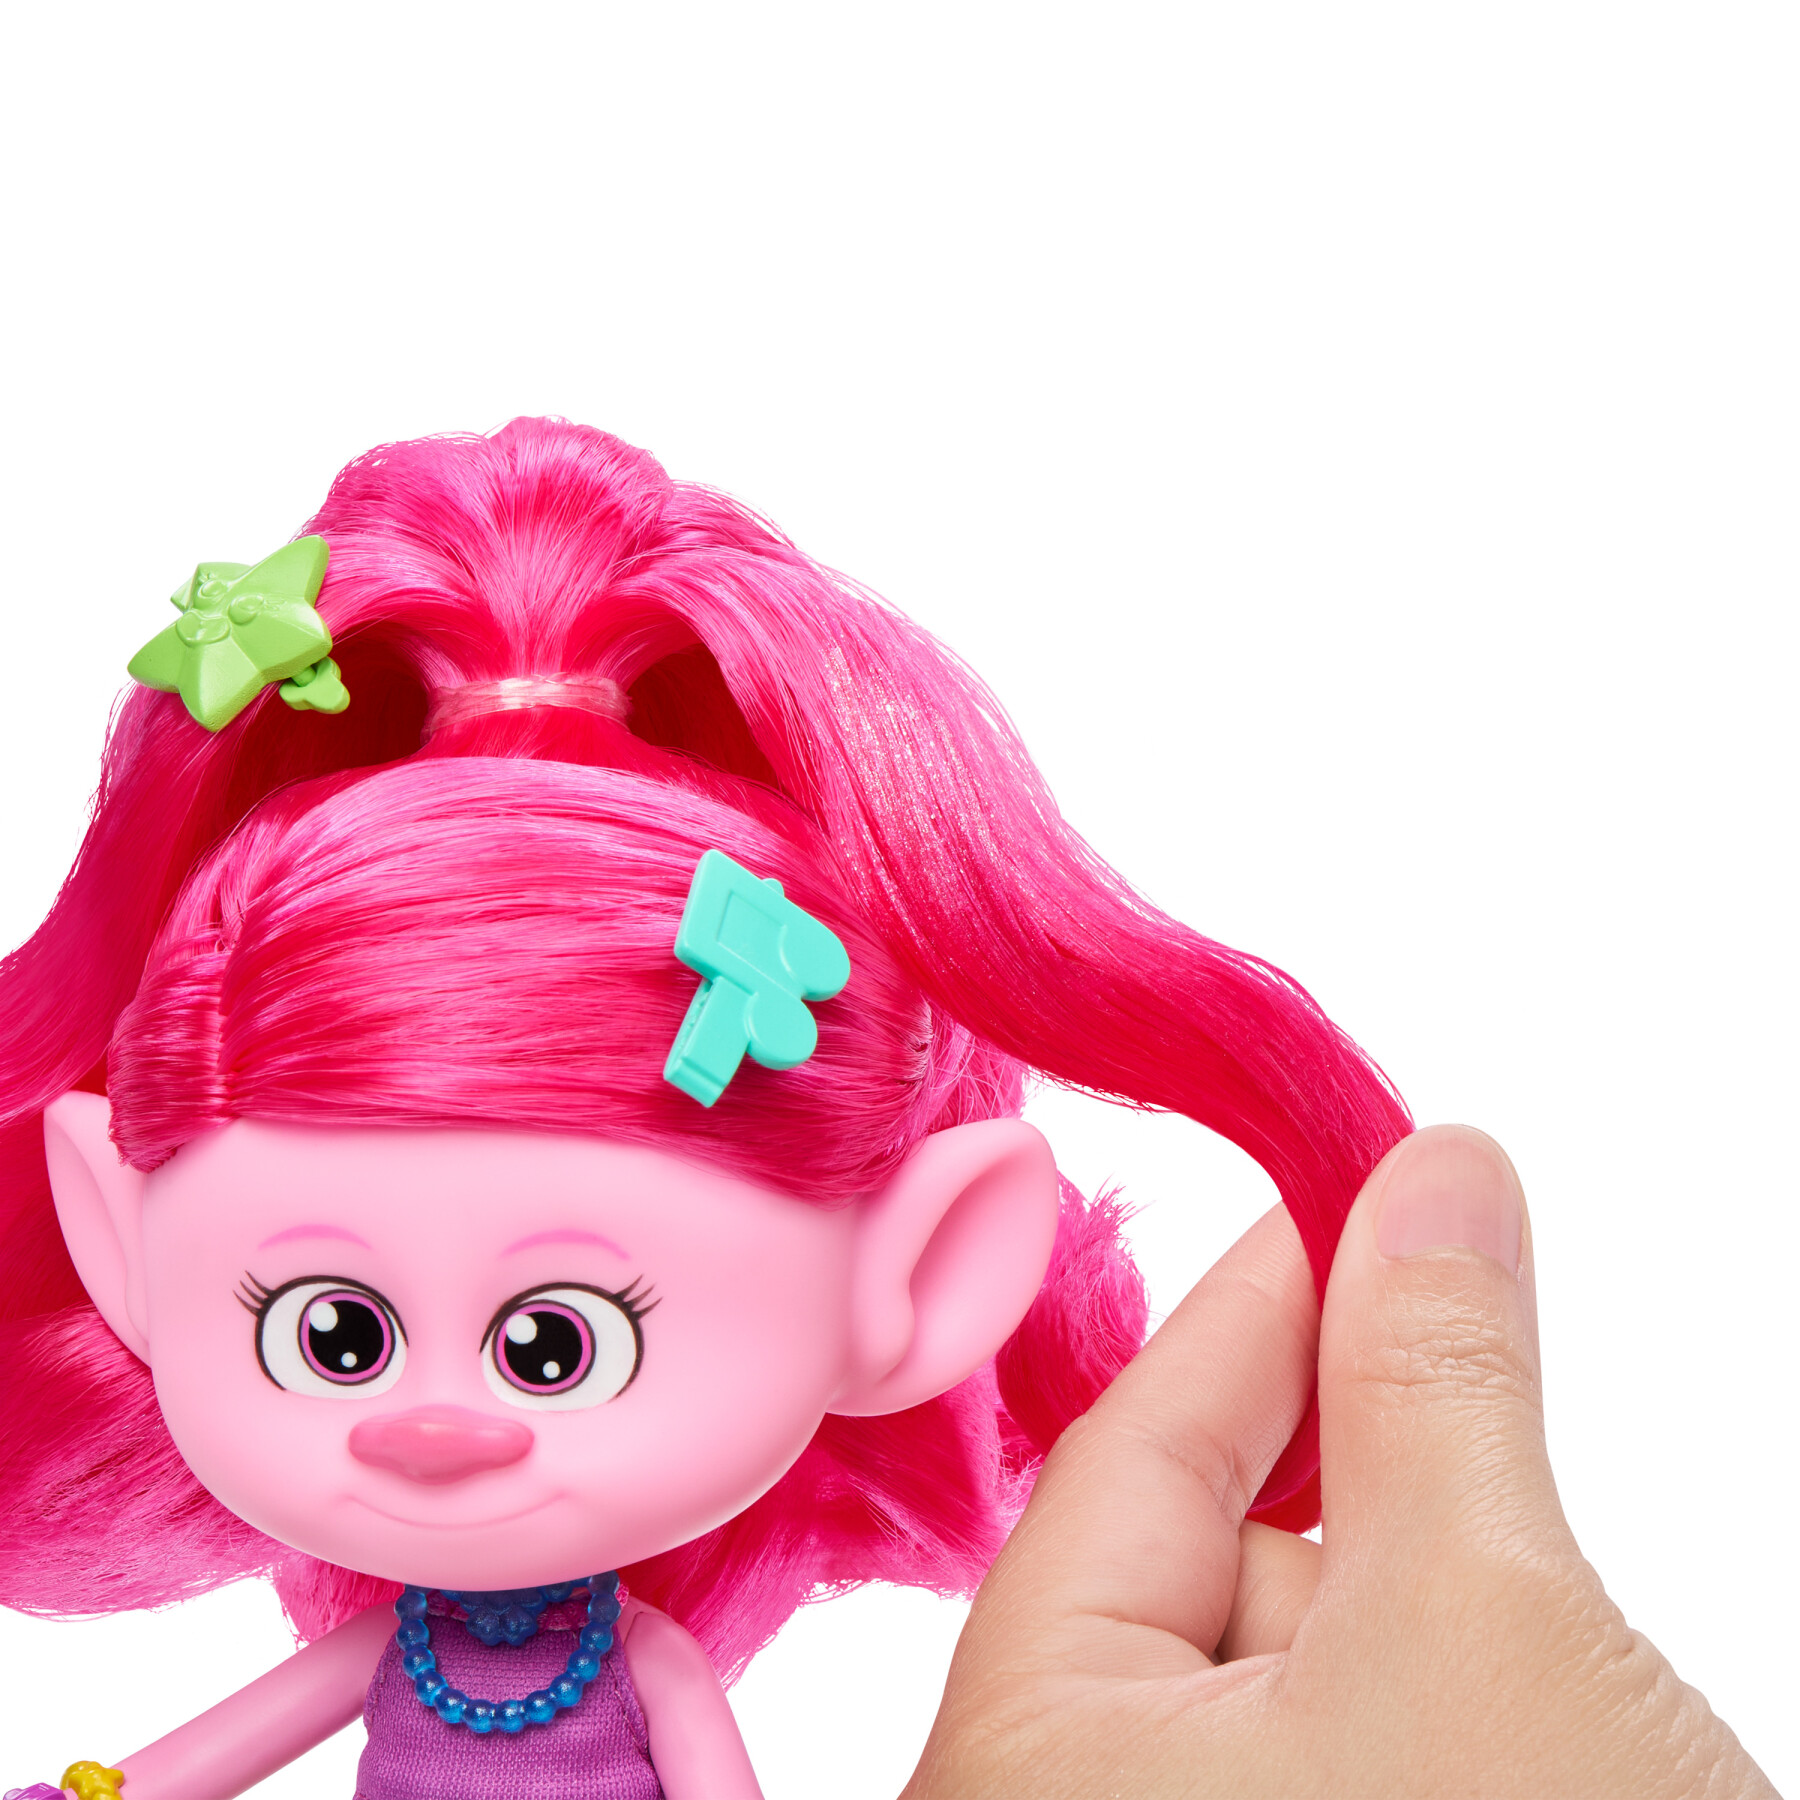 Dreamworks trolls tutti insieme - regina poppy capelli fantastici - Trolls